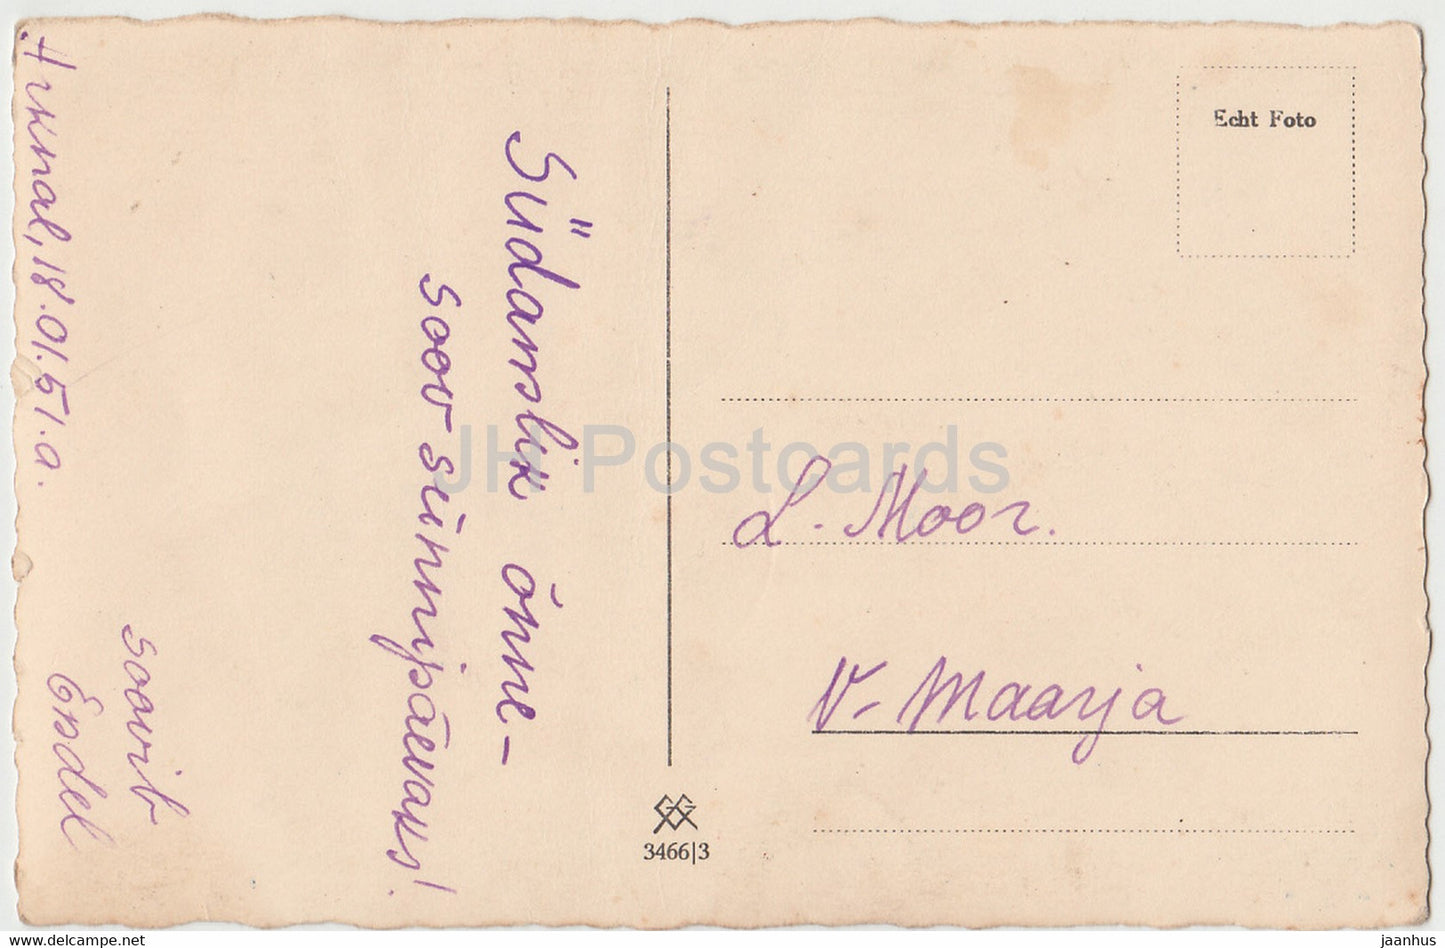 Femme - 3466 - 1951 - Allemagne - carte postale ancienne - utilisé